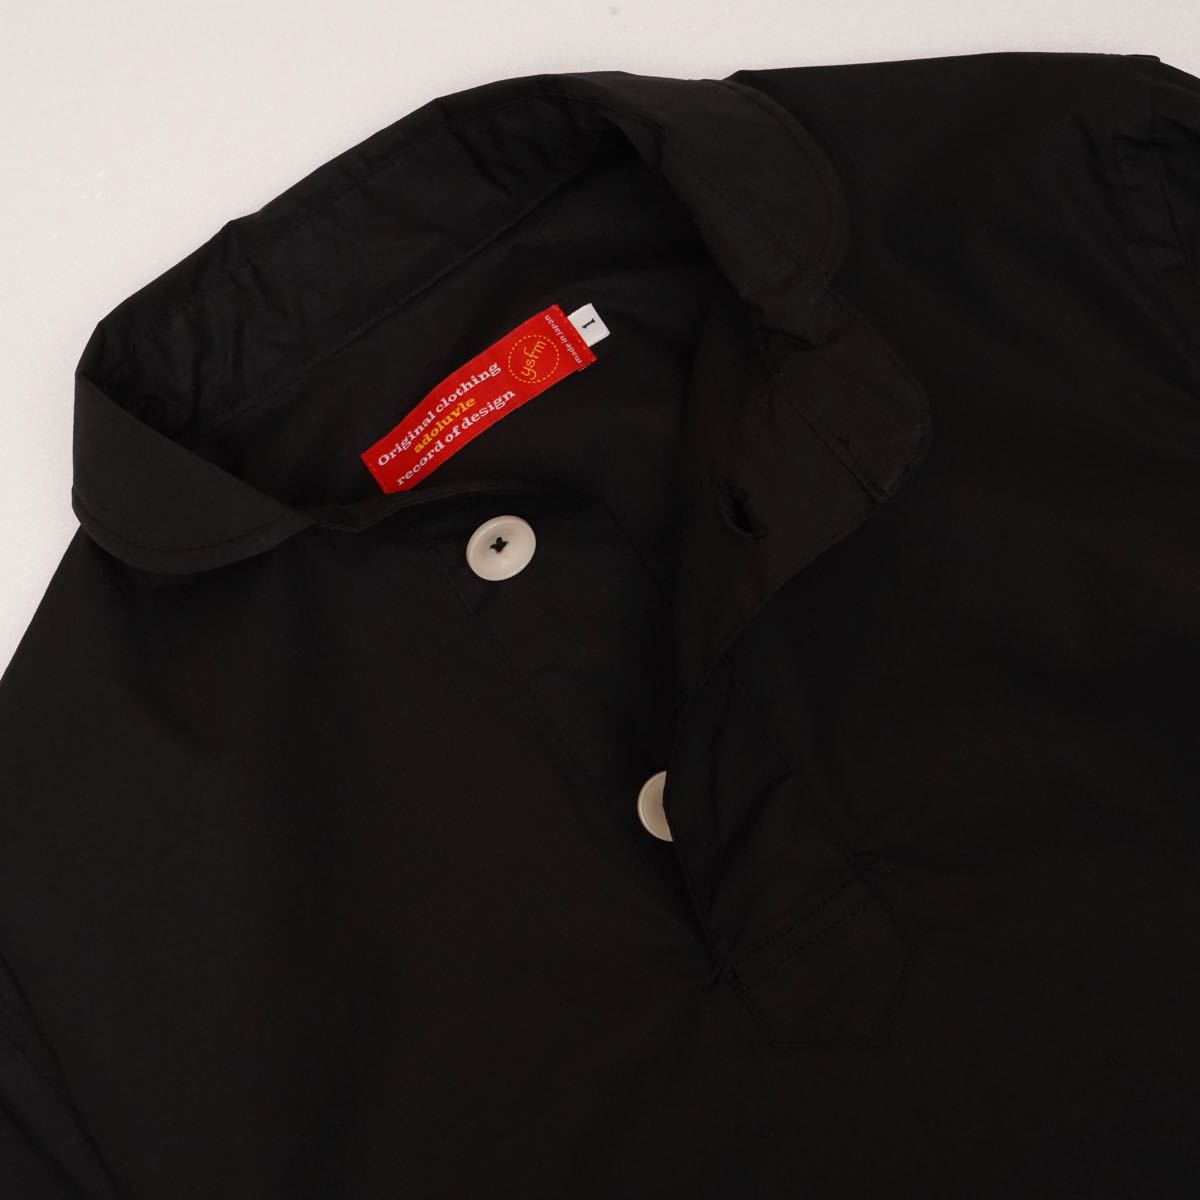 アドラーブル オリジナル プルオーバーシャツ ブラック ペルヴィアンピマコットン ADOLUVLE ORIGINAL PULLOVER SHIRTS  BLACK PERUVIAN PIMA COTTON MADE IN JAPAN